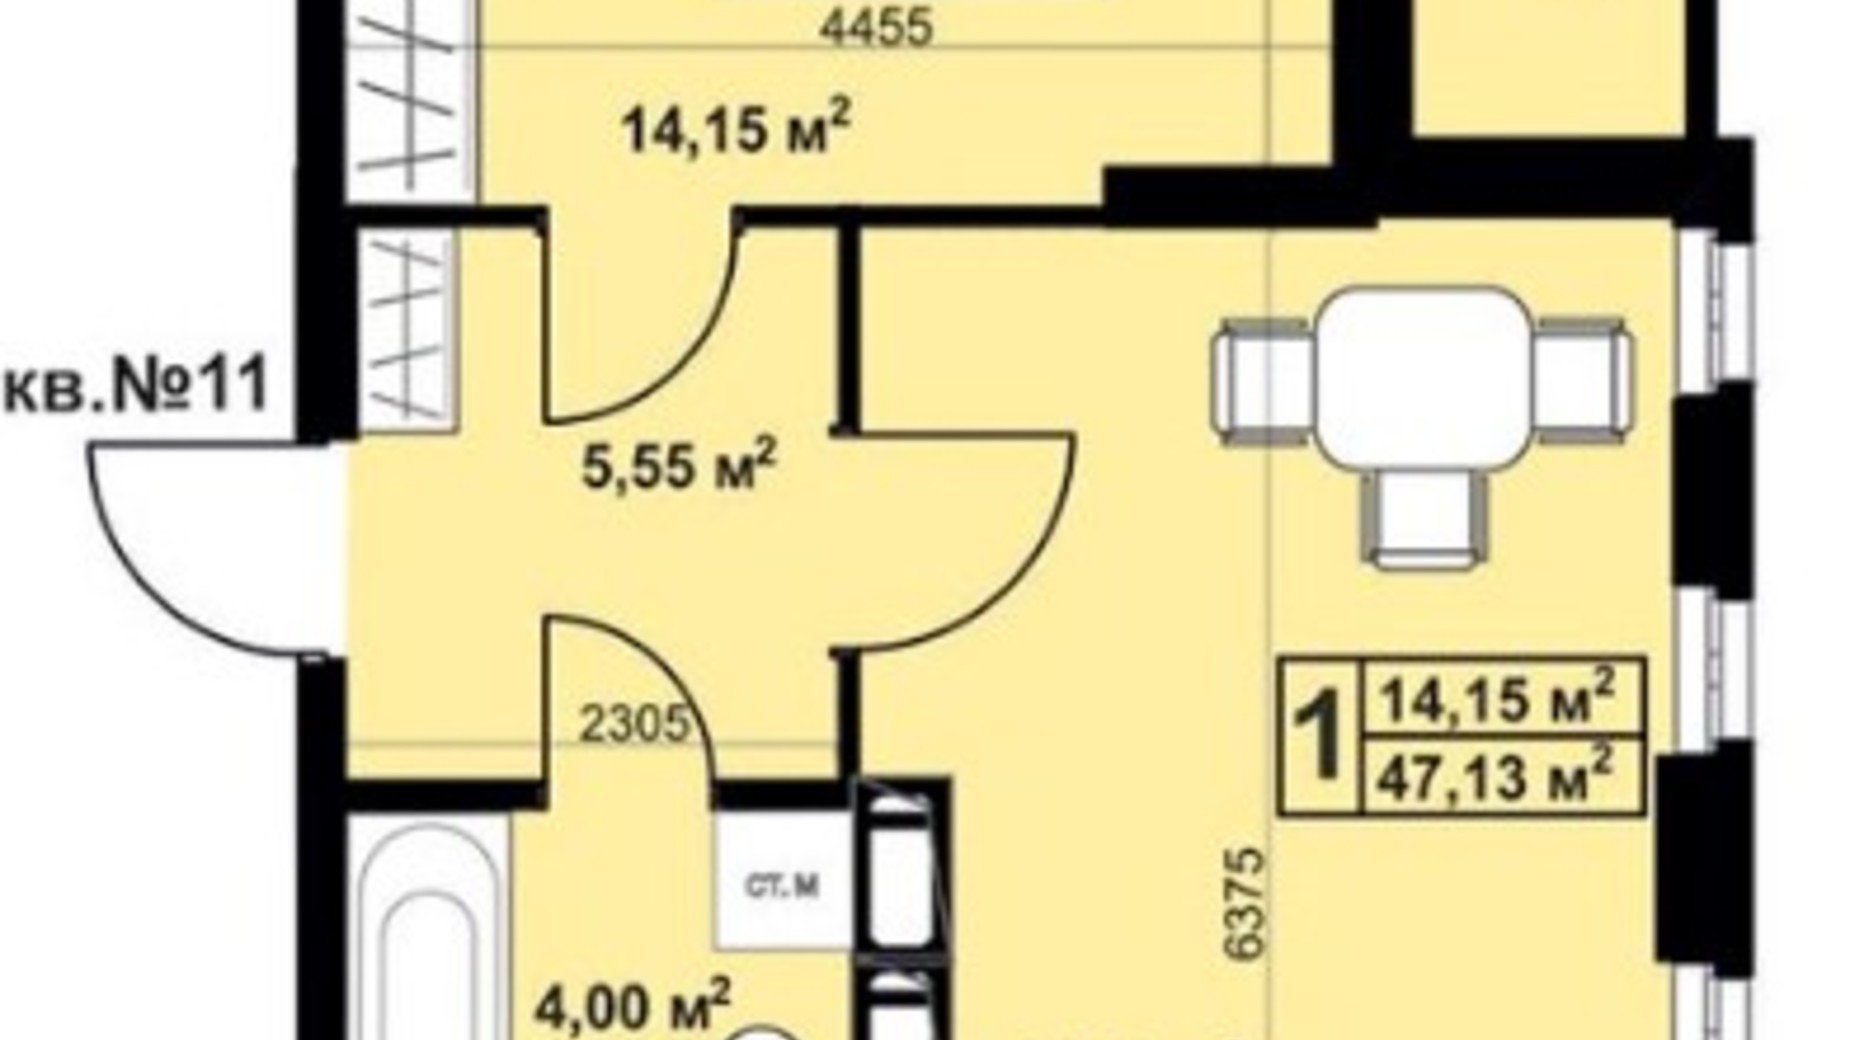 Планування 1-кімнатної квартири в ЖК Андріївський 47.13 м², фото 297248